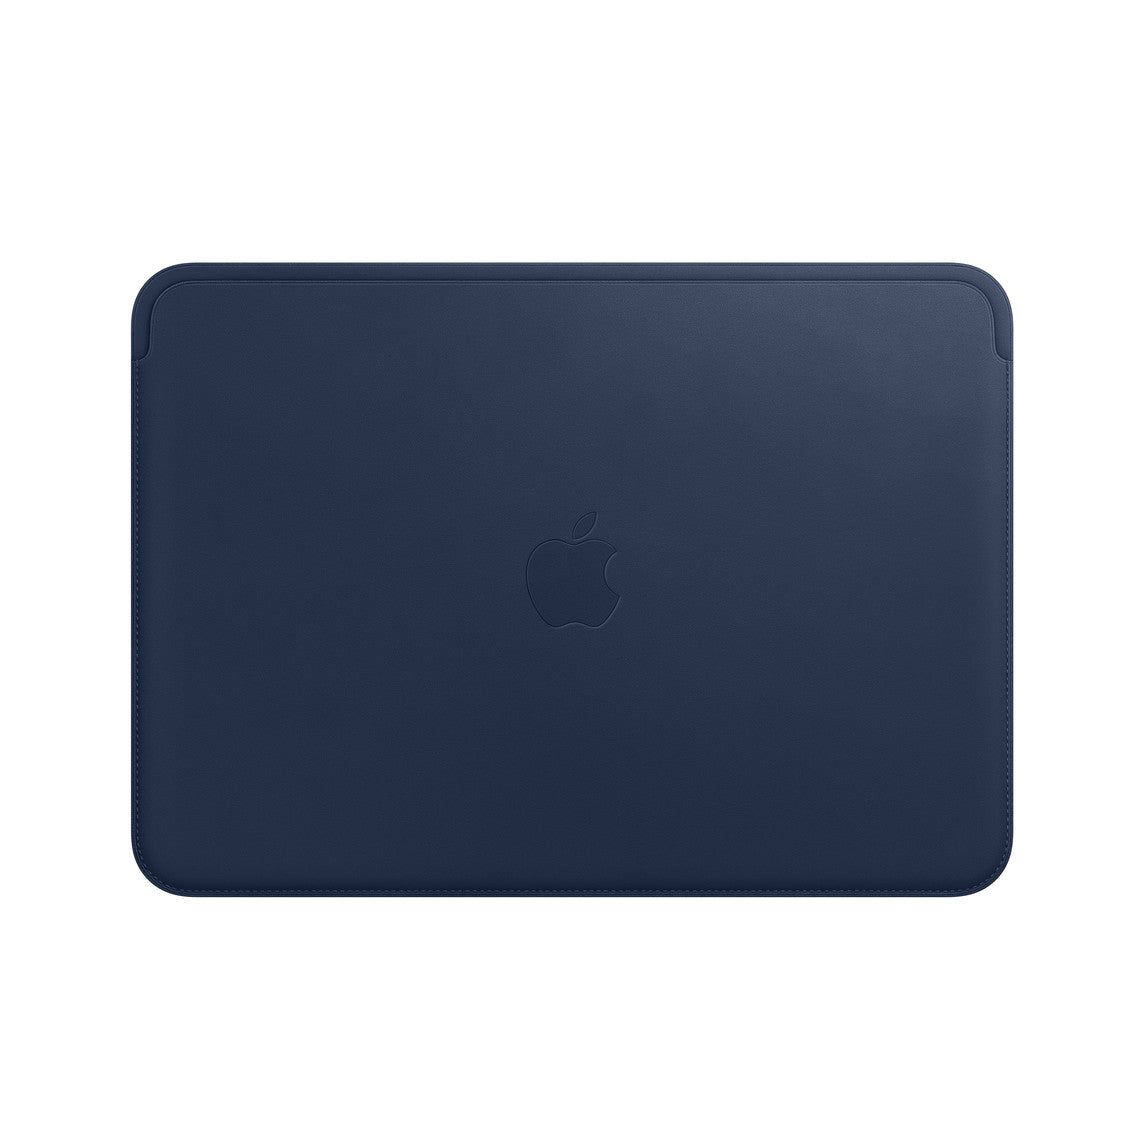 Funda de piel para el MacBook de 12 pulgadas - Azul noche